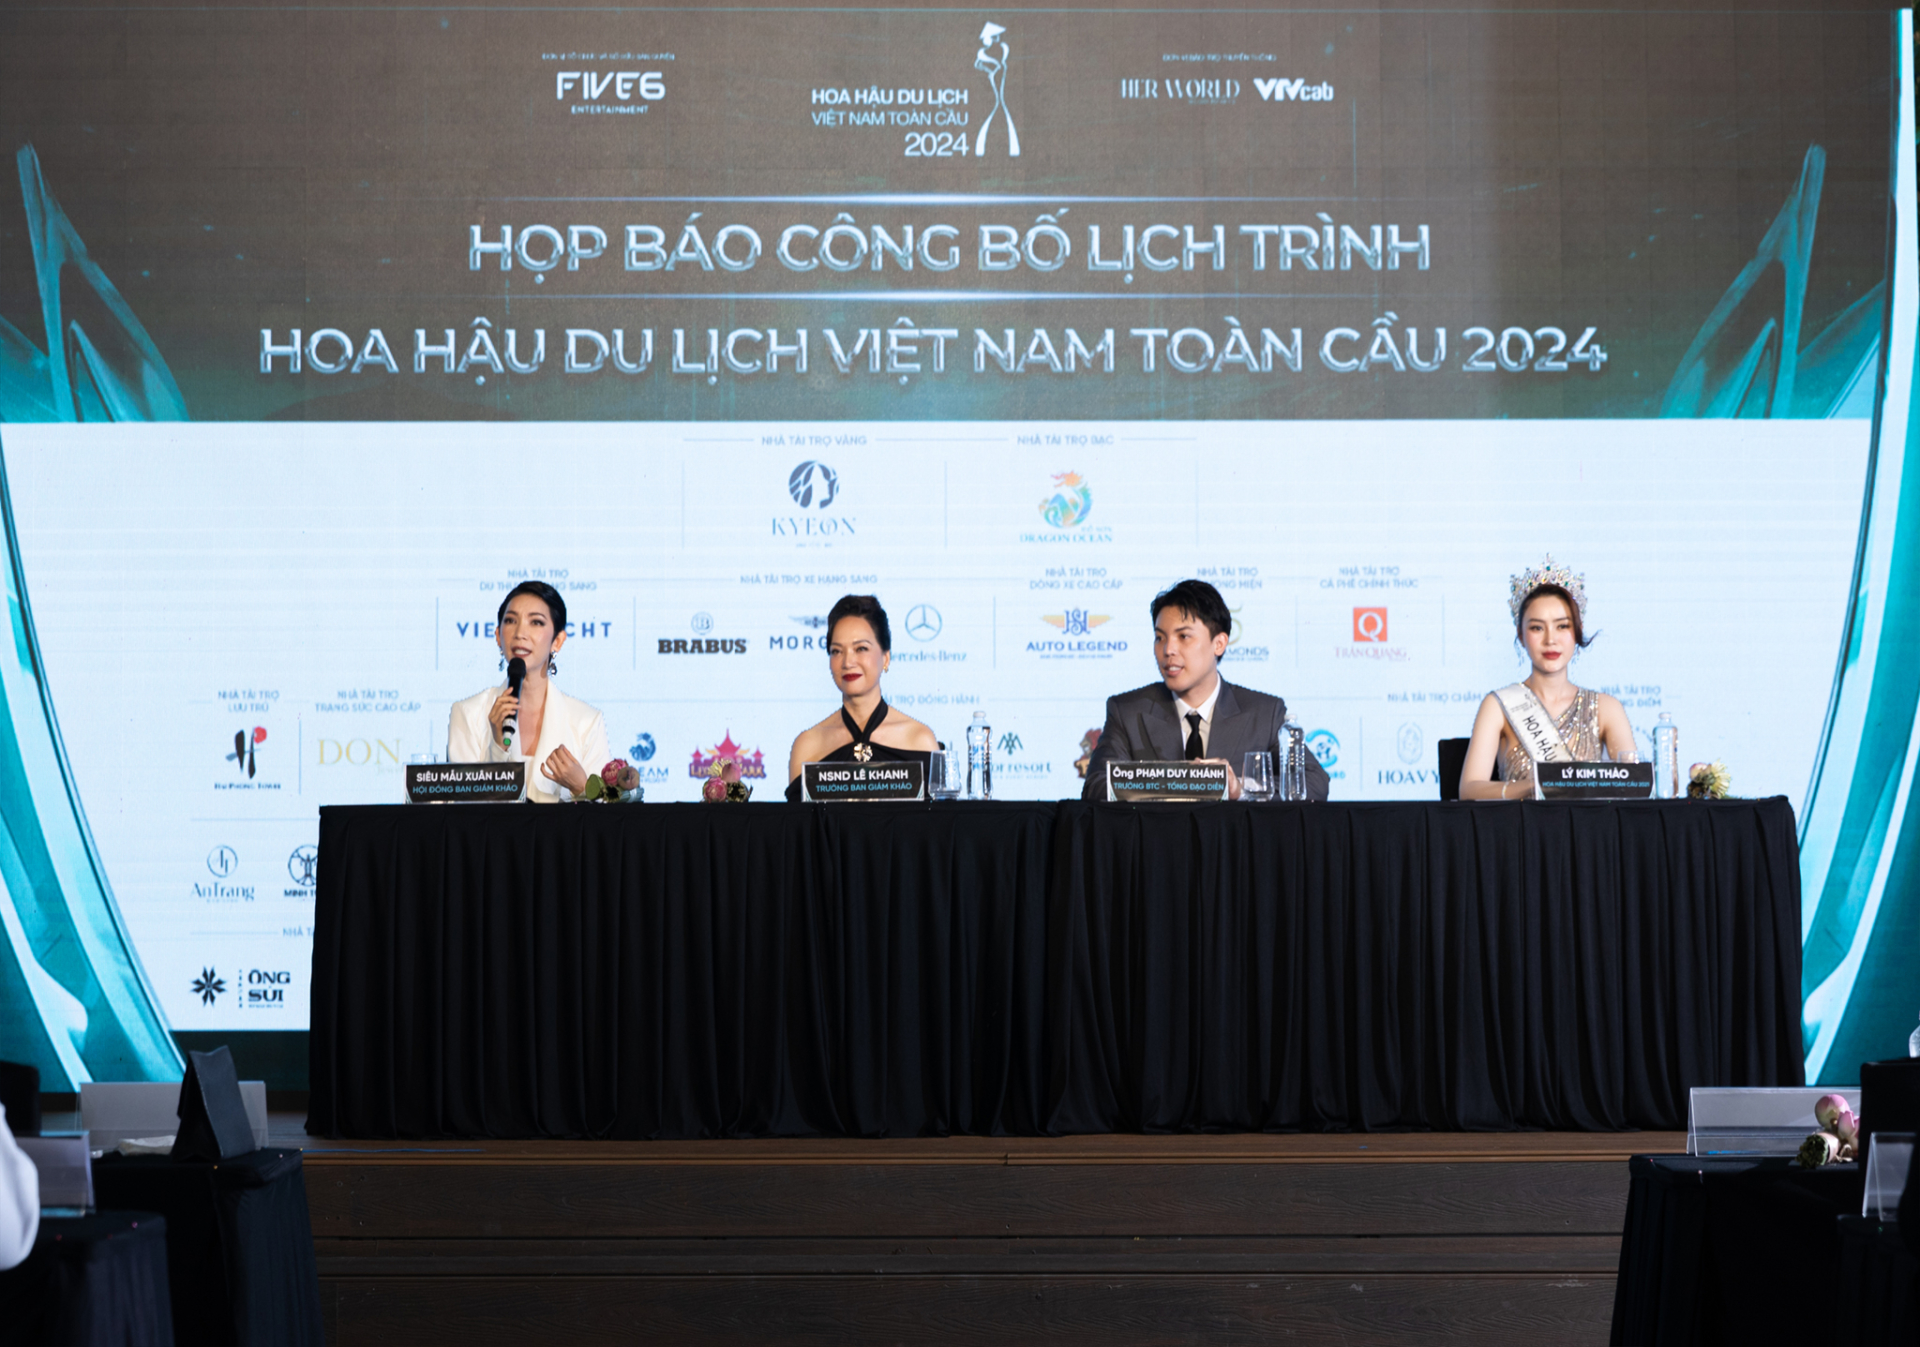 Hoa hậu du lịch Việt Nam toàn cầu 2024 sẽ nhận được giải thưởng 3,5 tỉ đồng - ảnh 3